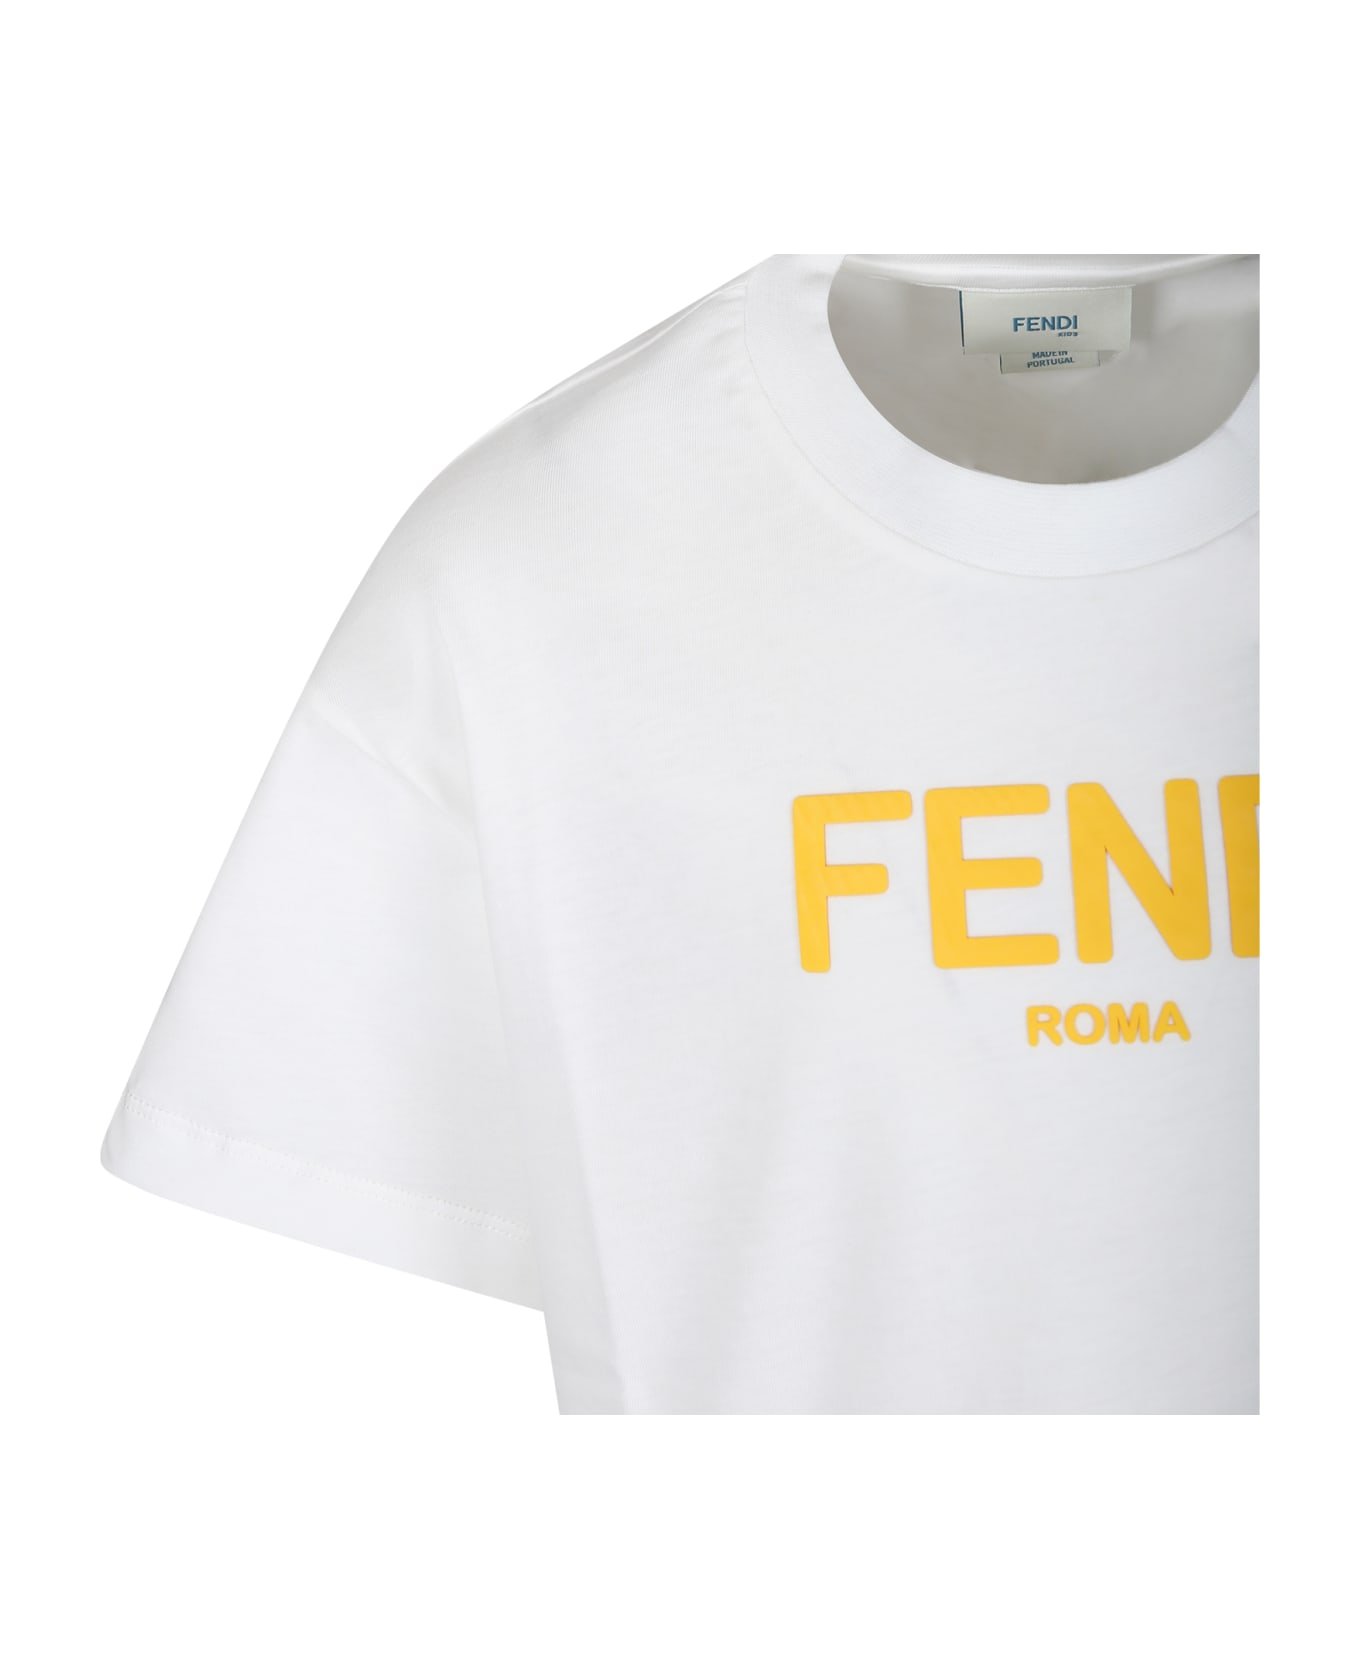 Fendi White T-shirt For Kids With Yellow Logo - White